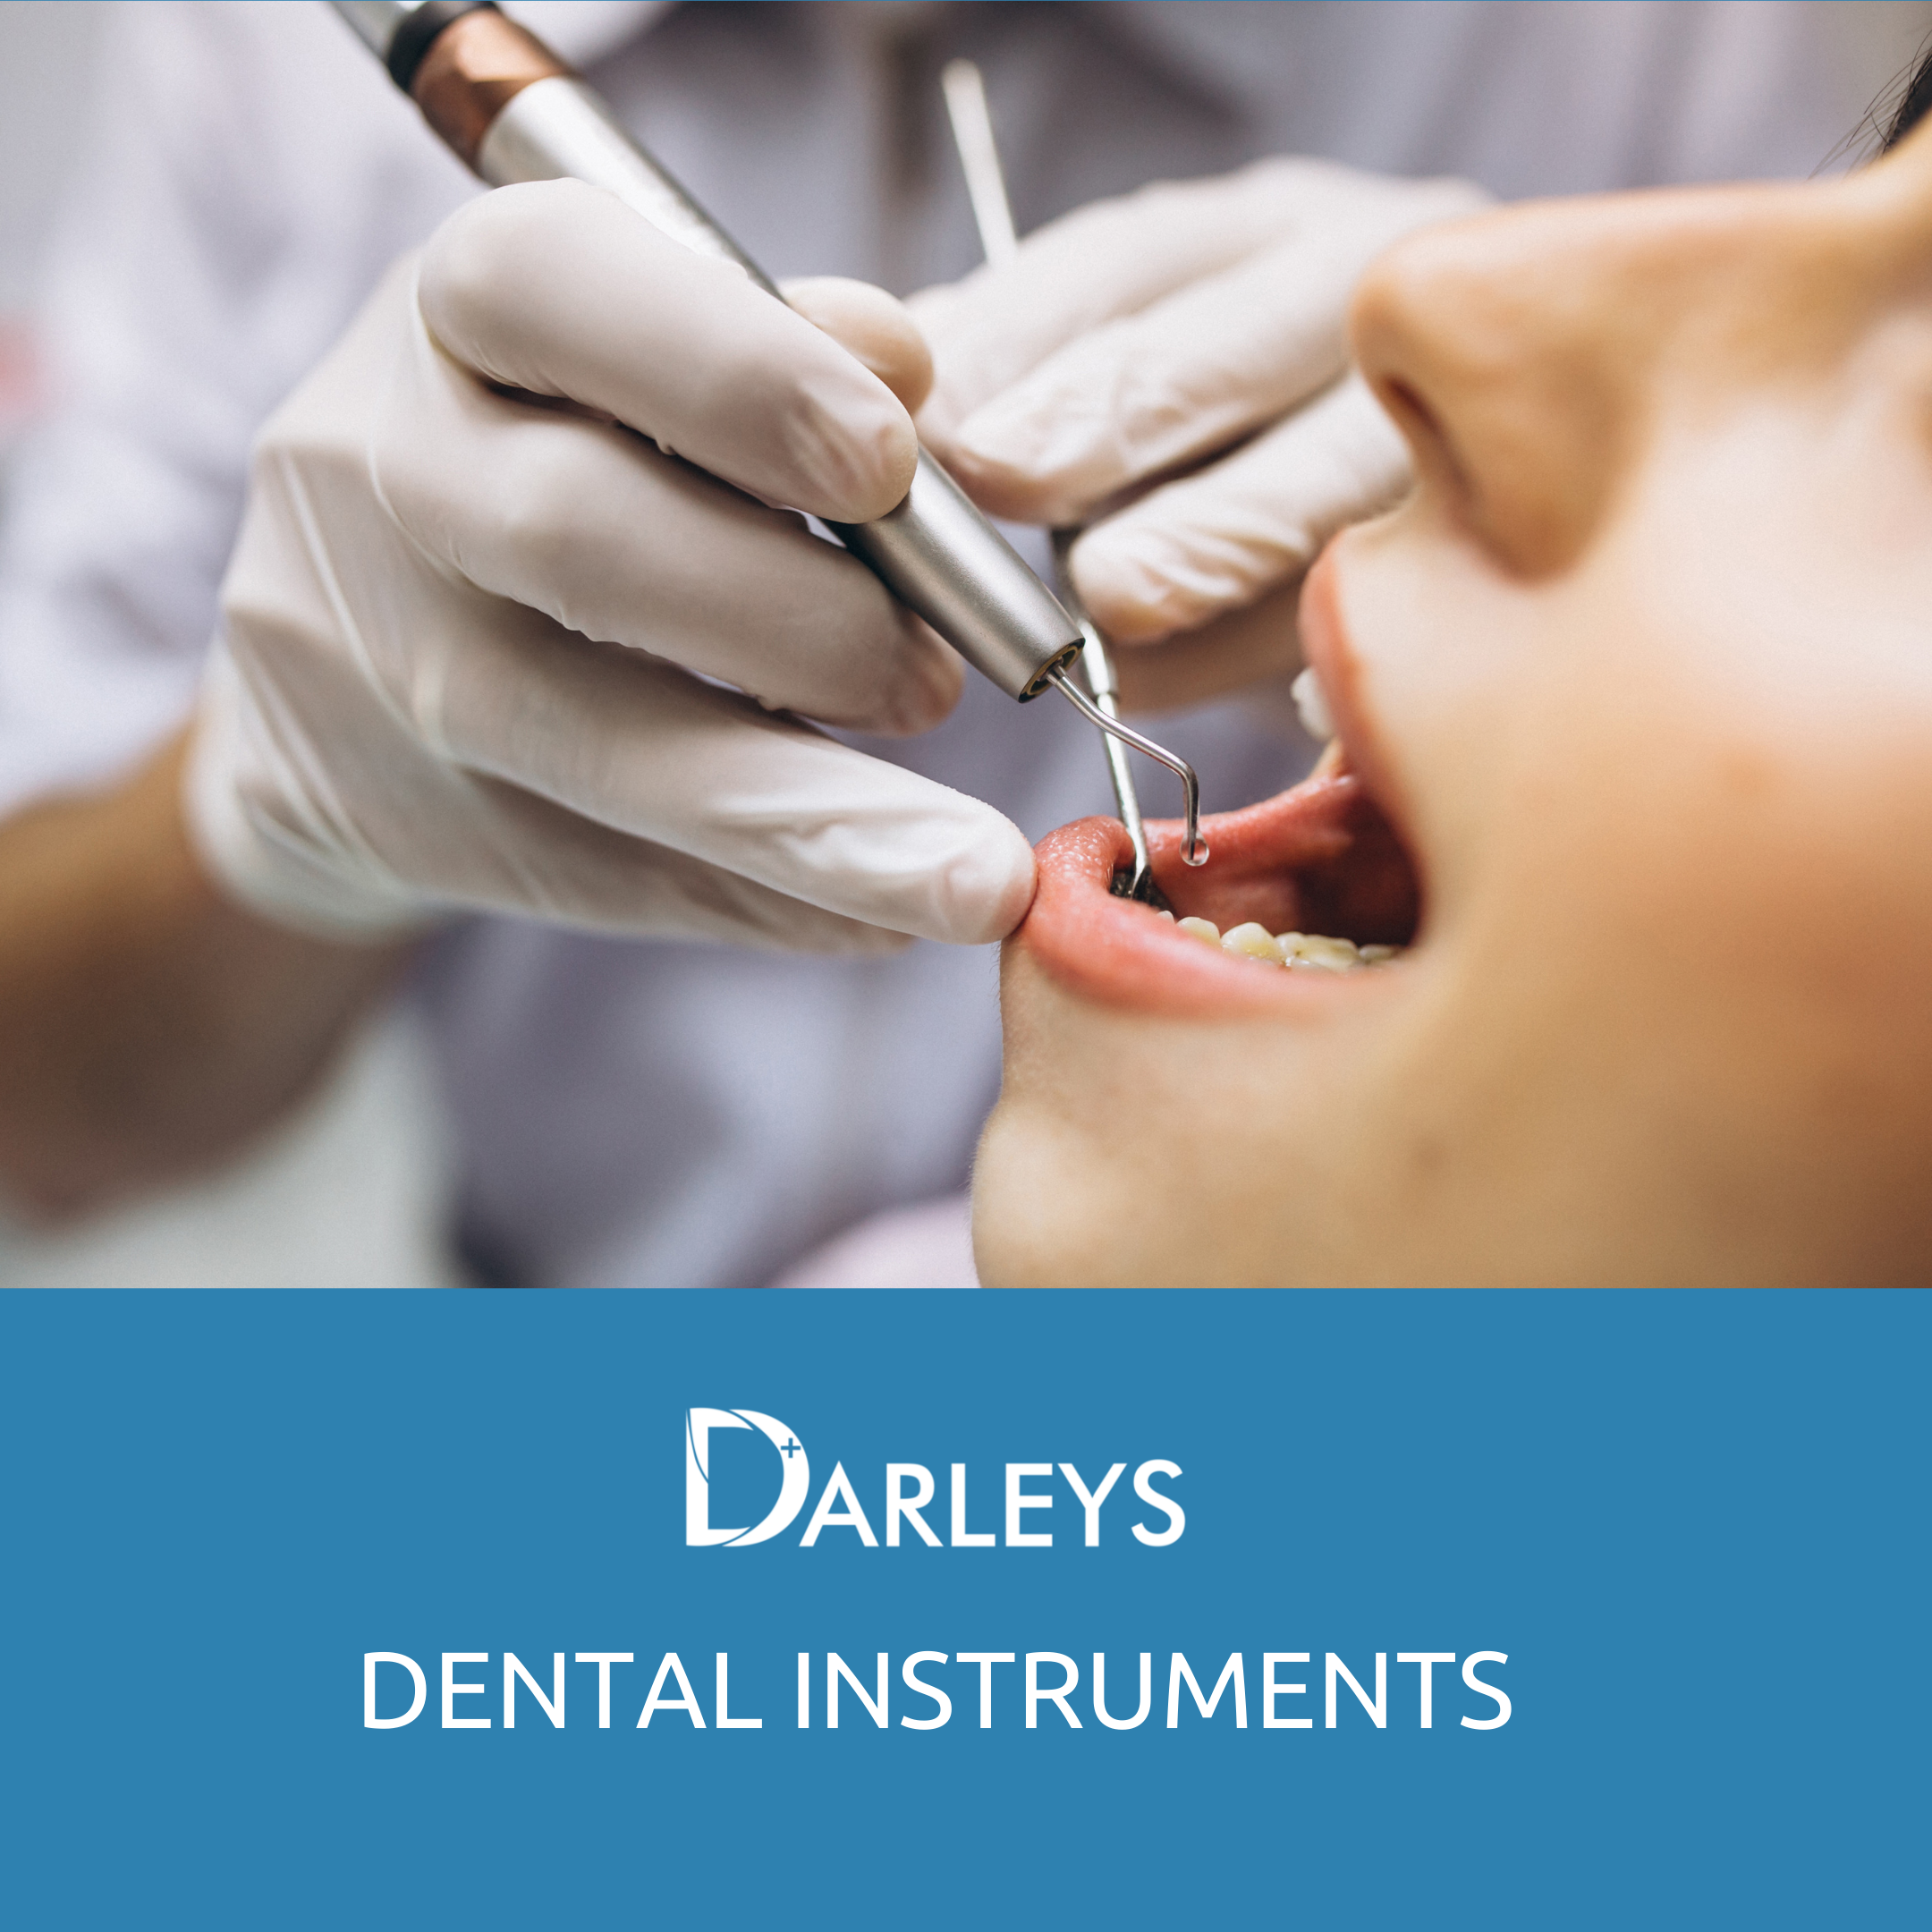 Darleys Surgical - Dental Instruments